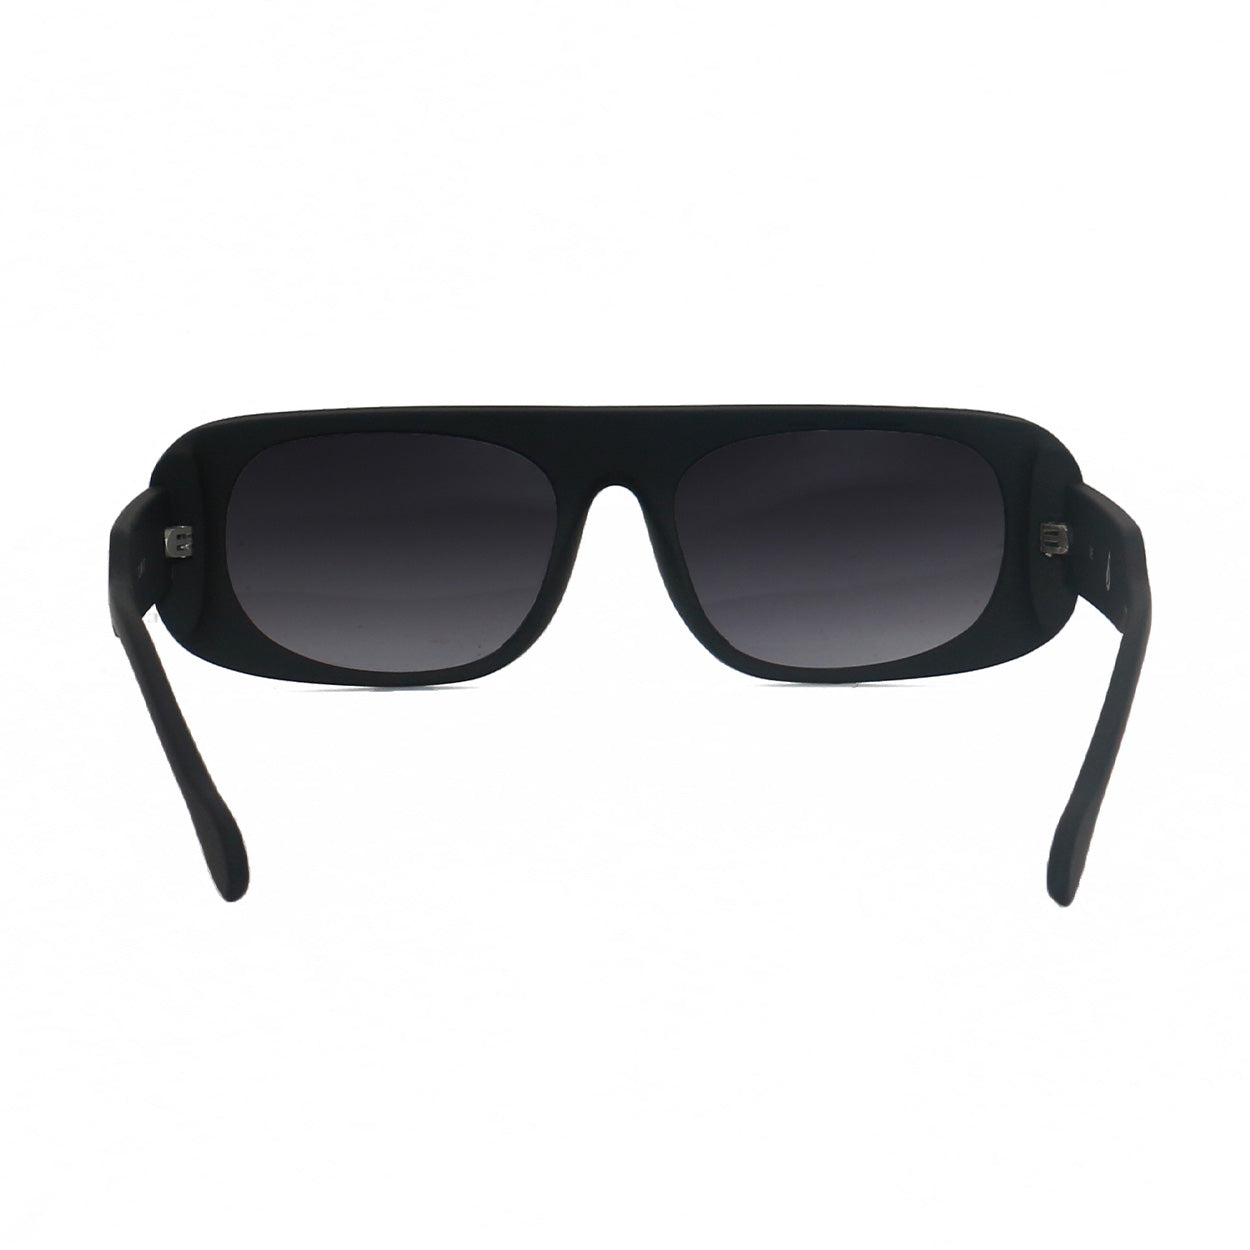 Claim It Sunglasses | Black